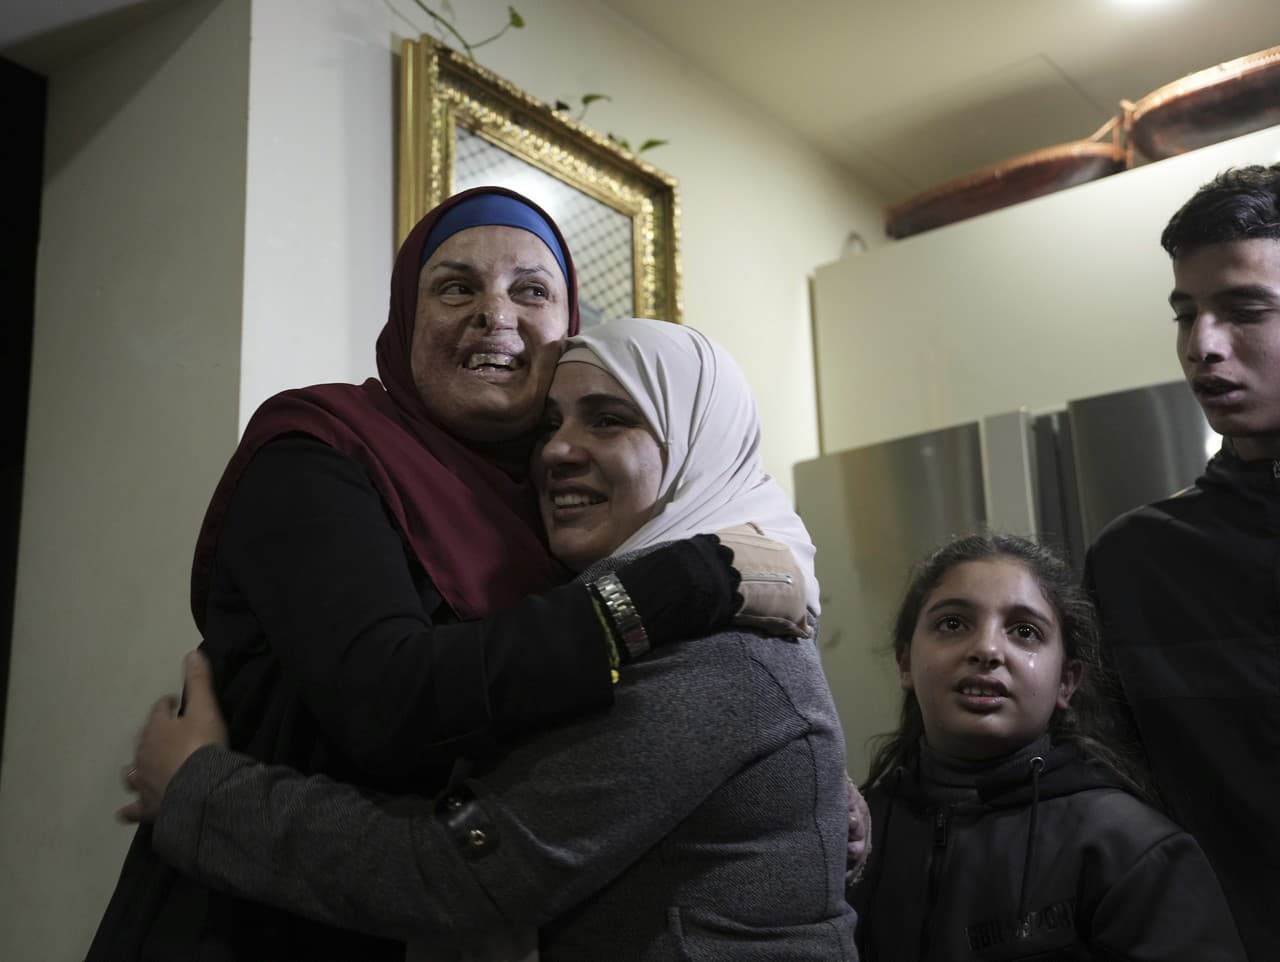 Israa Jaabisová (31) bola v roku 2015 obvinená a odsúdená z pokusu o teroristický útok v Jeruzaleme. Pred pár dňami ju prepustili v rámci výmeny väzňov